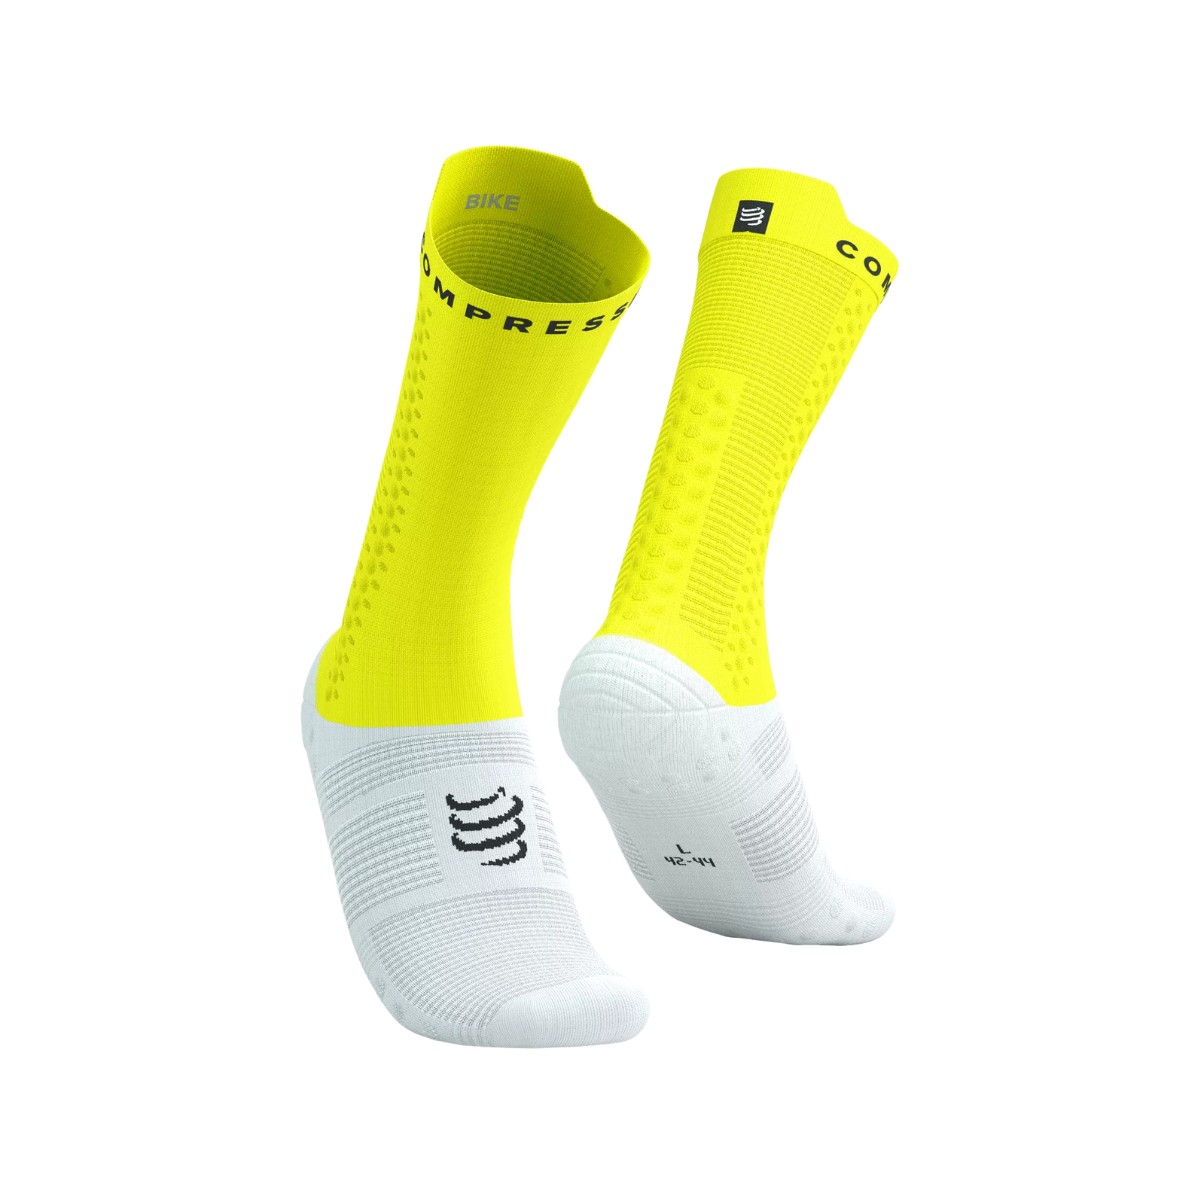 Socken Compressport Pro Racing v4.0 Gelb Weiß, Größe Größe 4